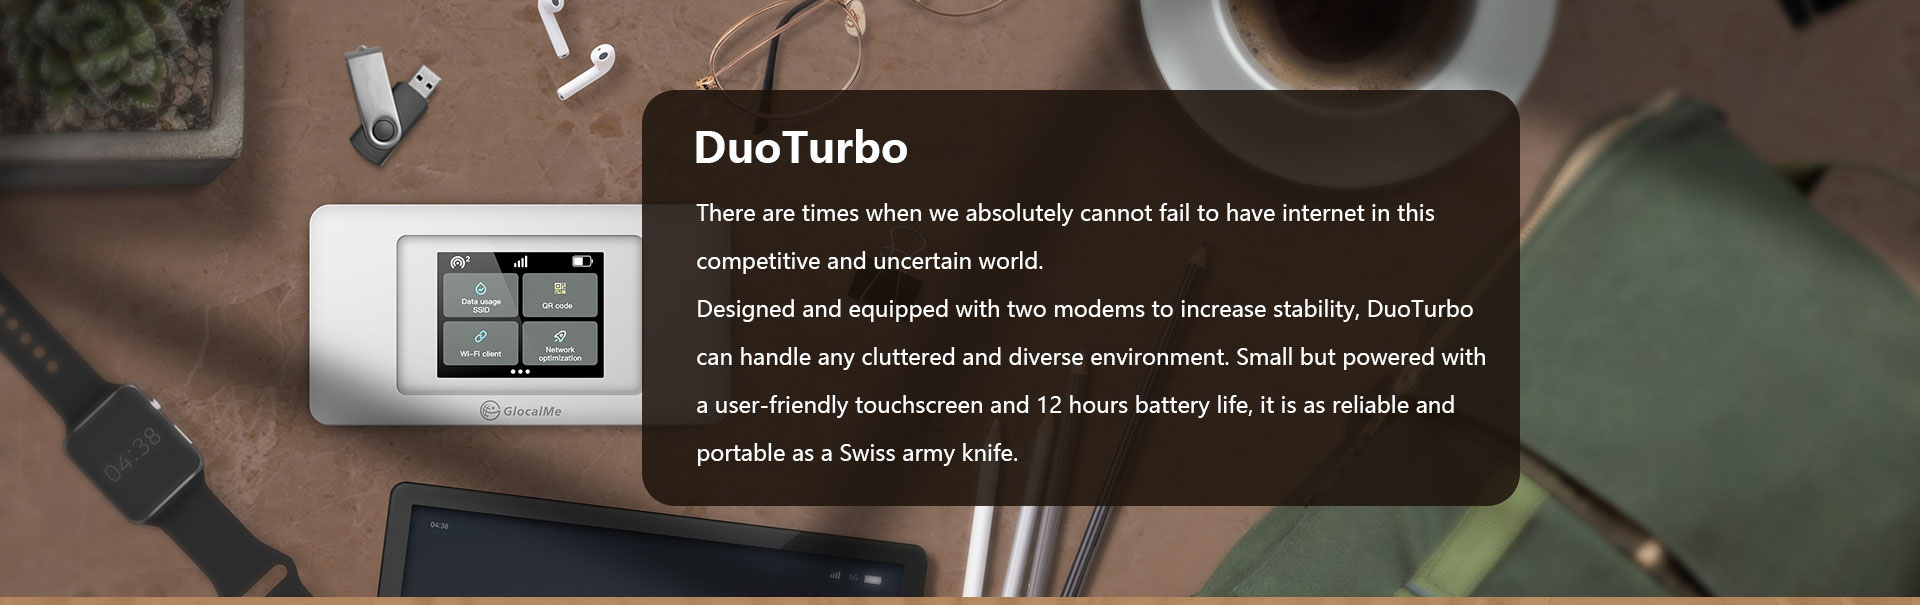 DuoTurbo 3